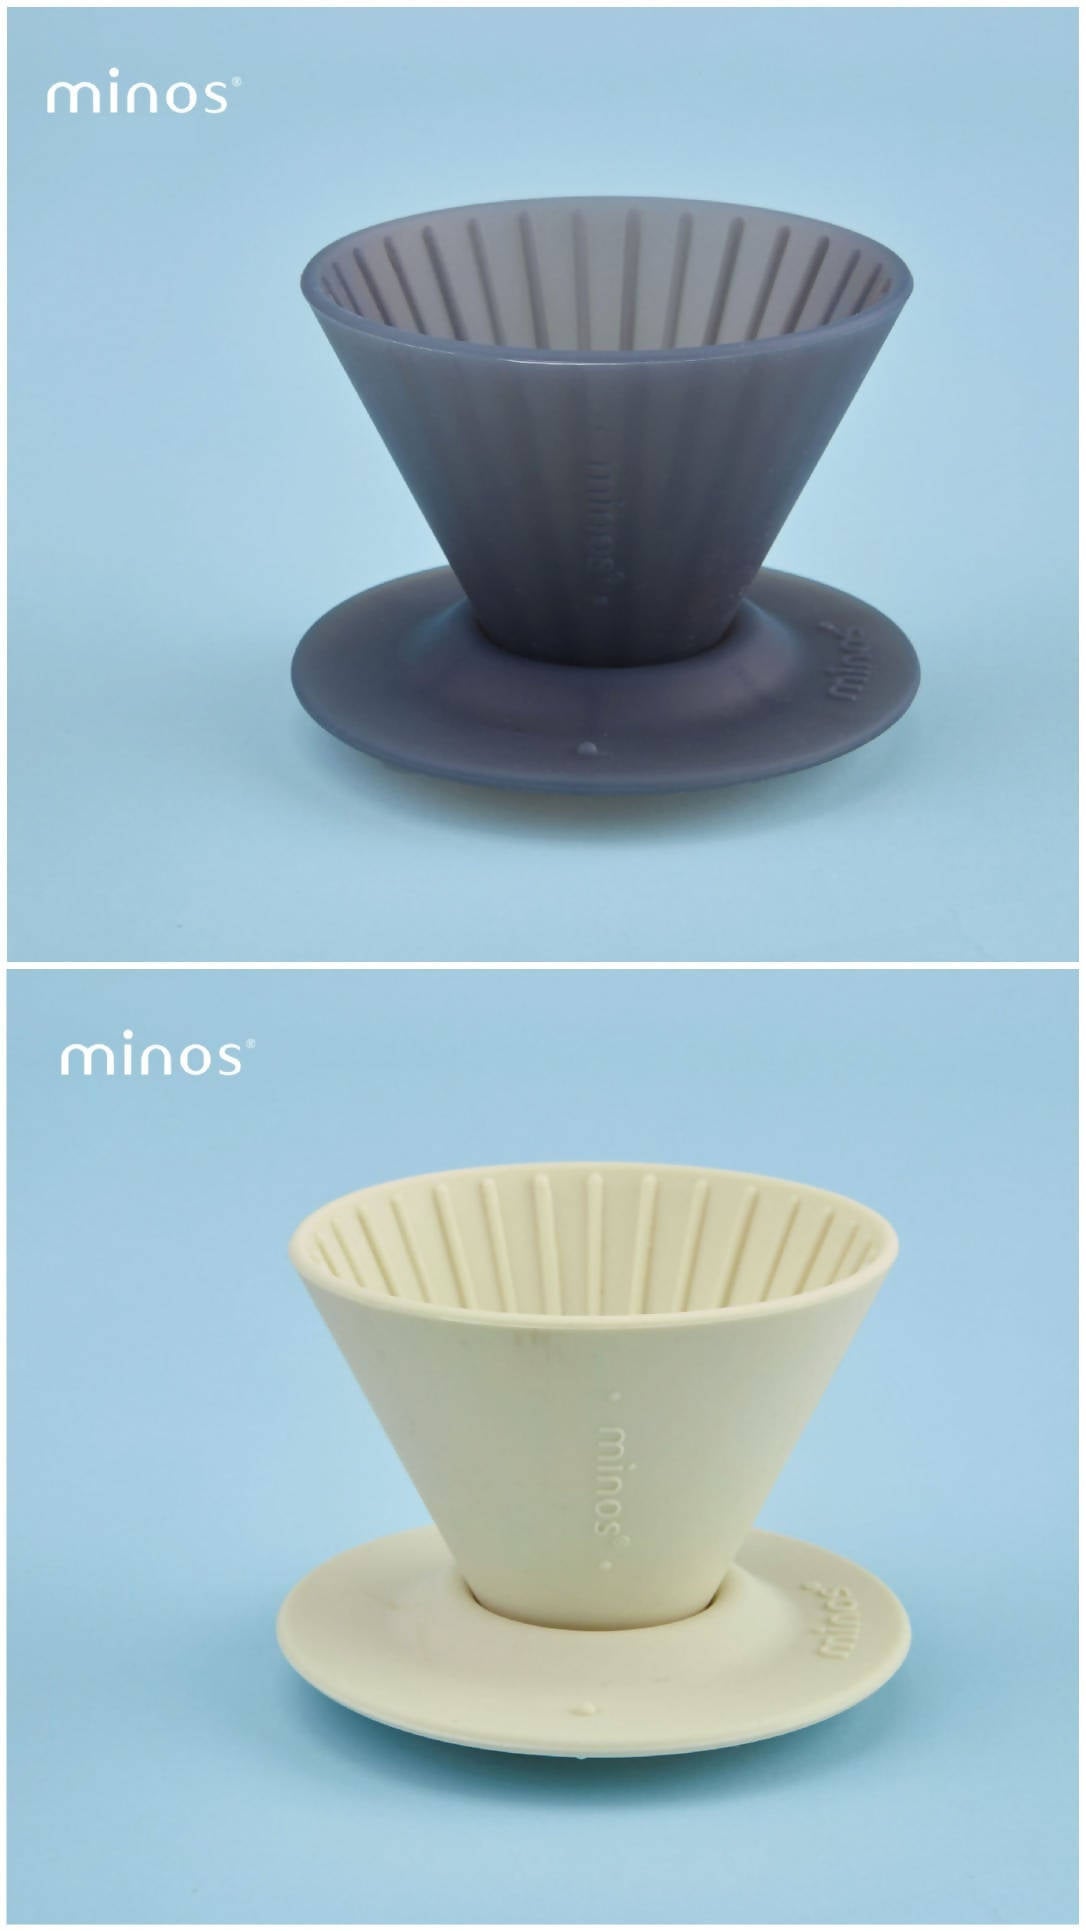 Minos Coffee Brewing Set - 美诺思 手冲咖啡用具套装